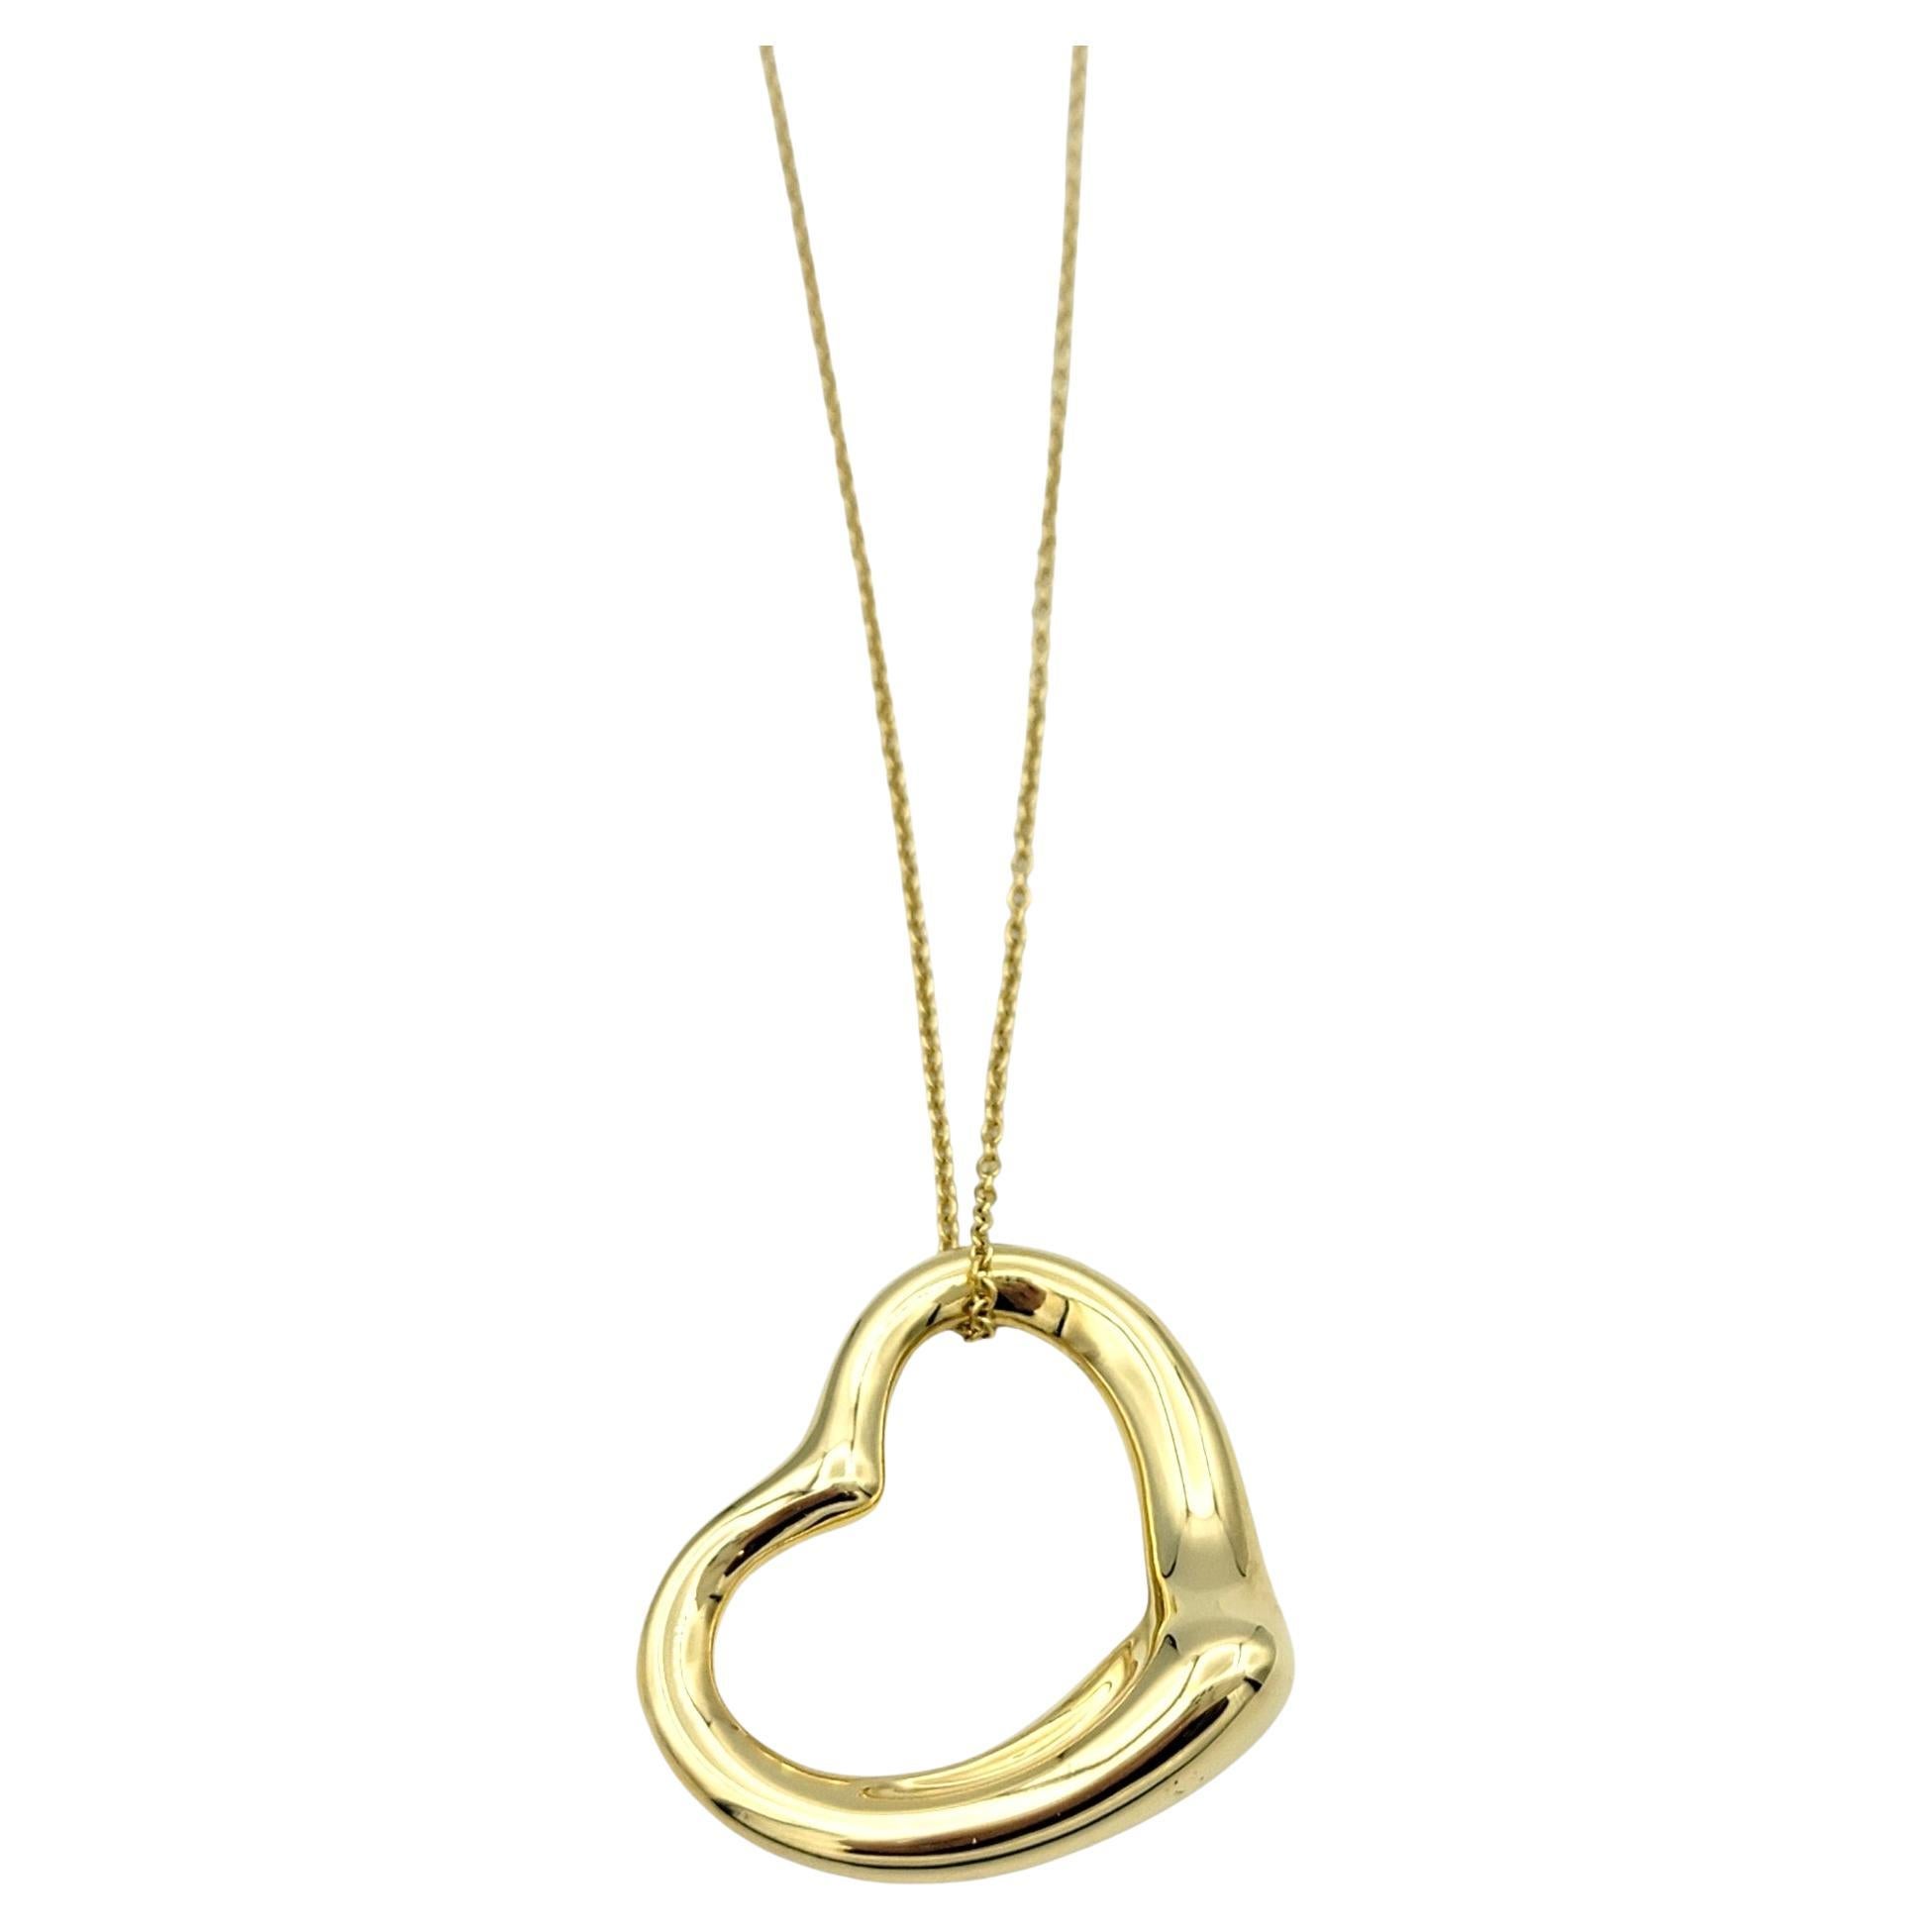 Diese Tiffany & Co. Die Open Heart Necklace von Elsa Peretti aus luxuriösem 18-karätigem Gelbgold ist ein zeitloses und ikonisches Schmuckstück. Diese von der bekannten Künstlerin Elsa Peretti entworfene Halskette mit einem zarten, offenen